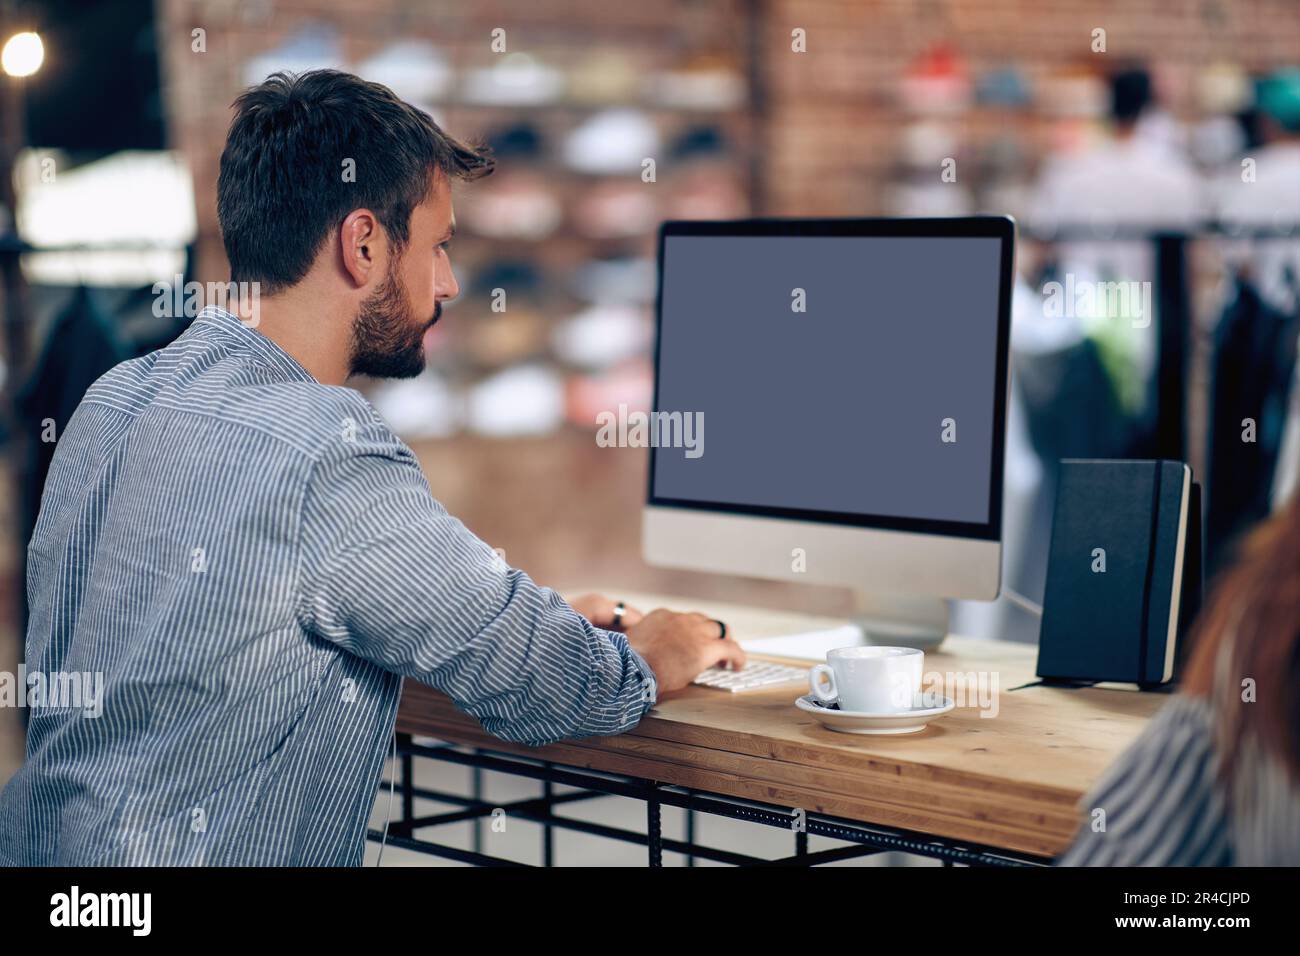 Jeune homme regardant l'écriture d'écran. Homme travaillant sur un ordinateur. Travail, étudiant, Internet café concept. Banque D'Images